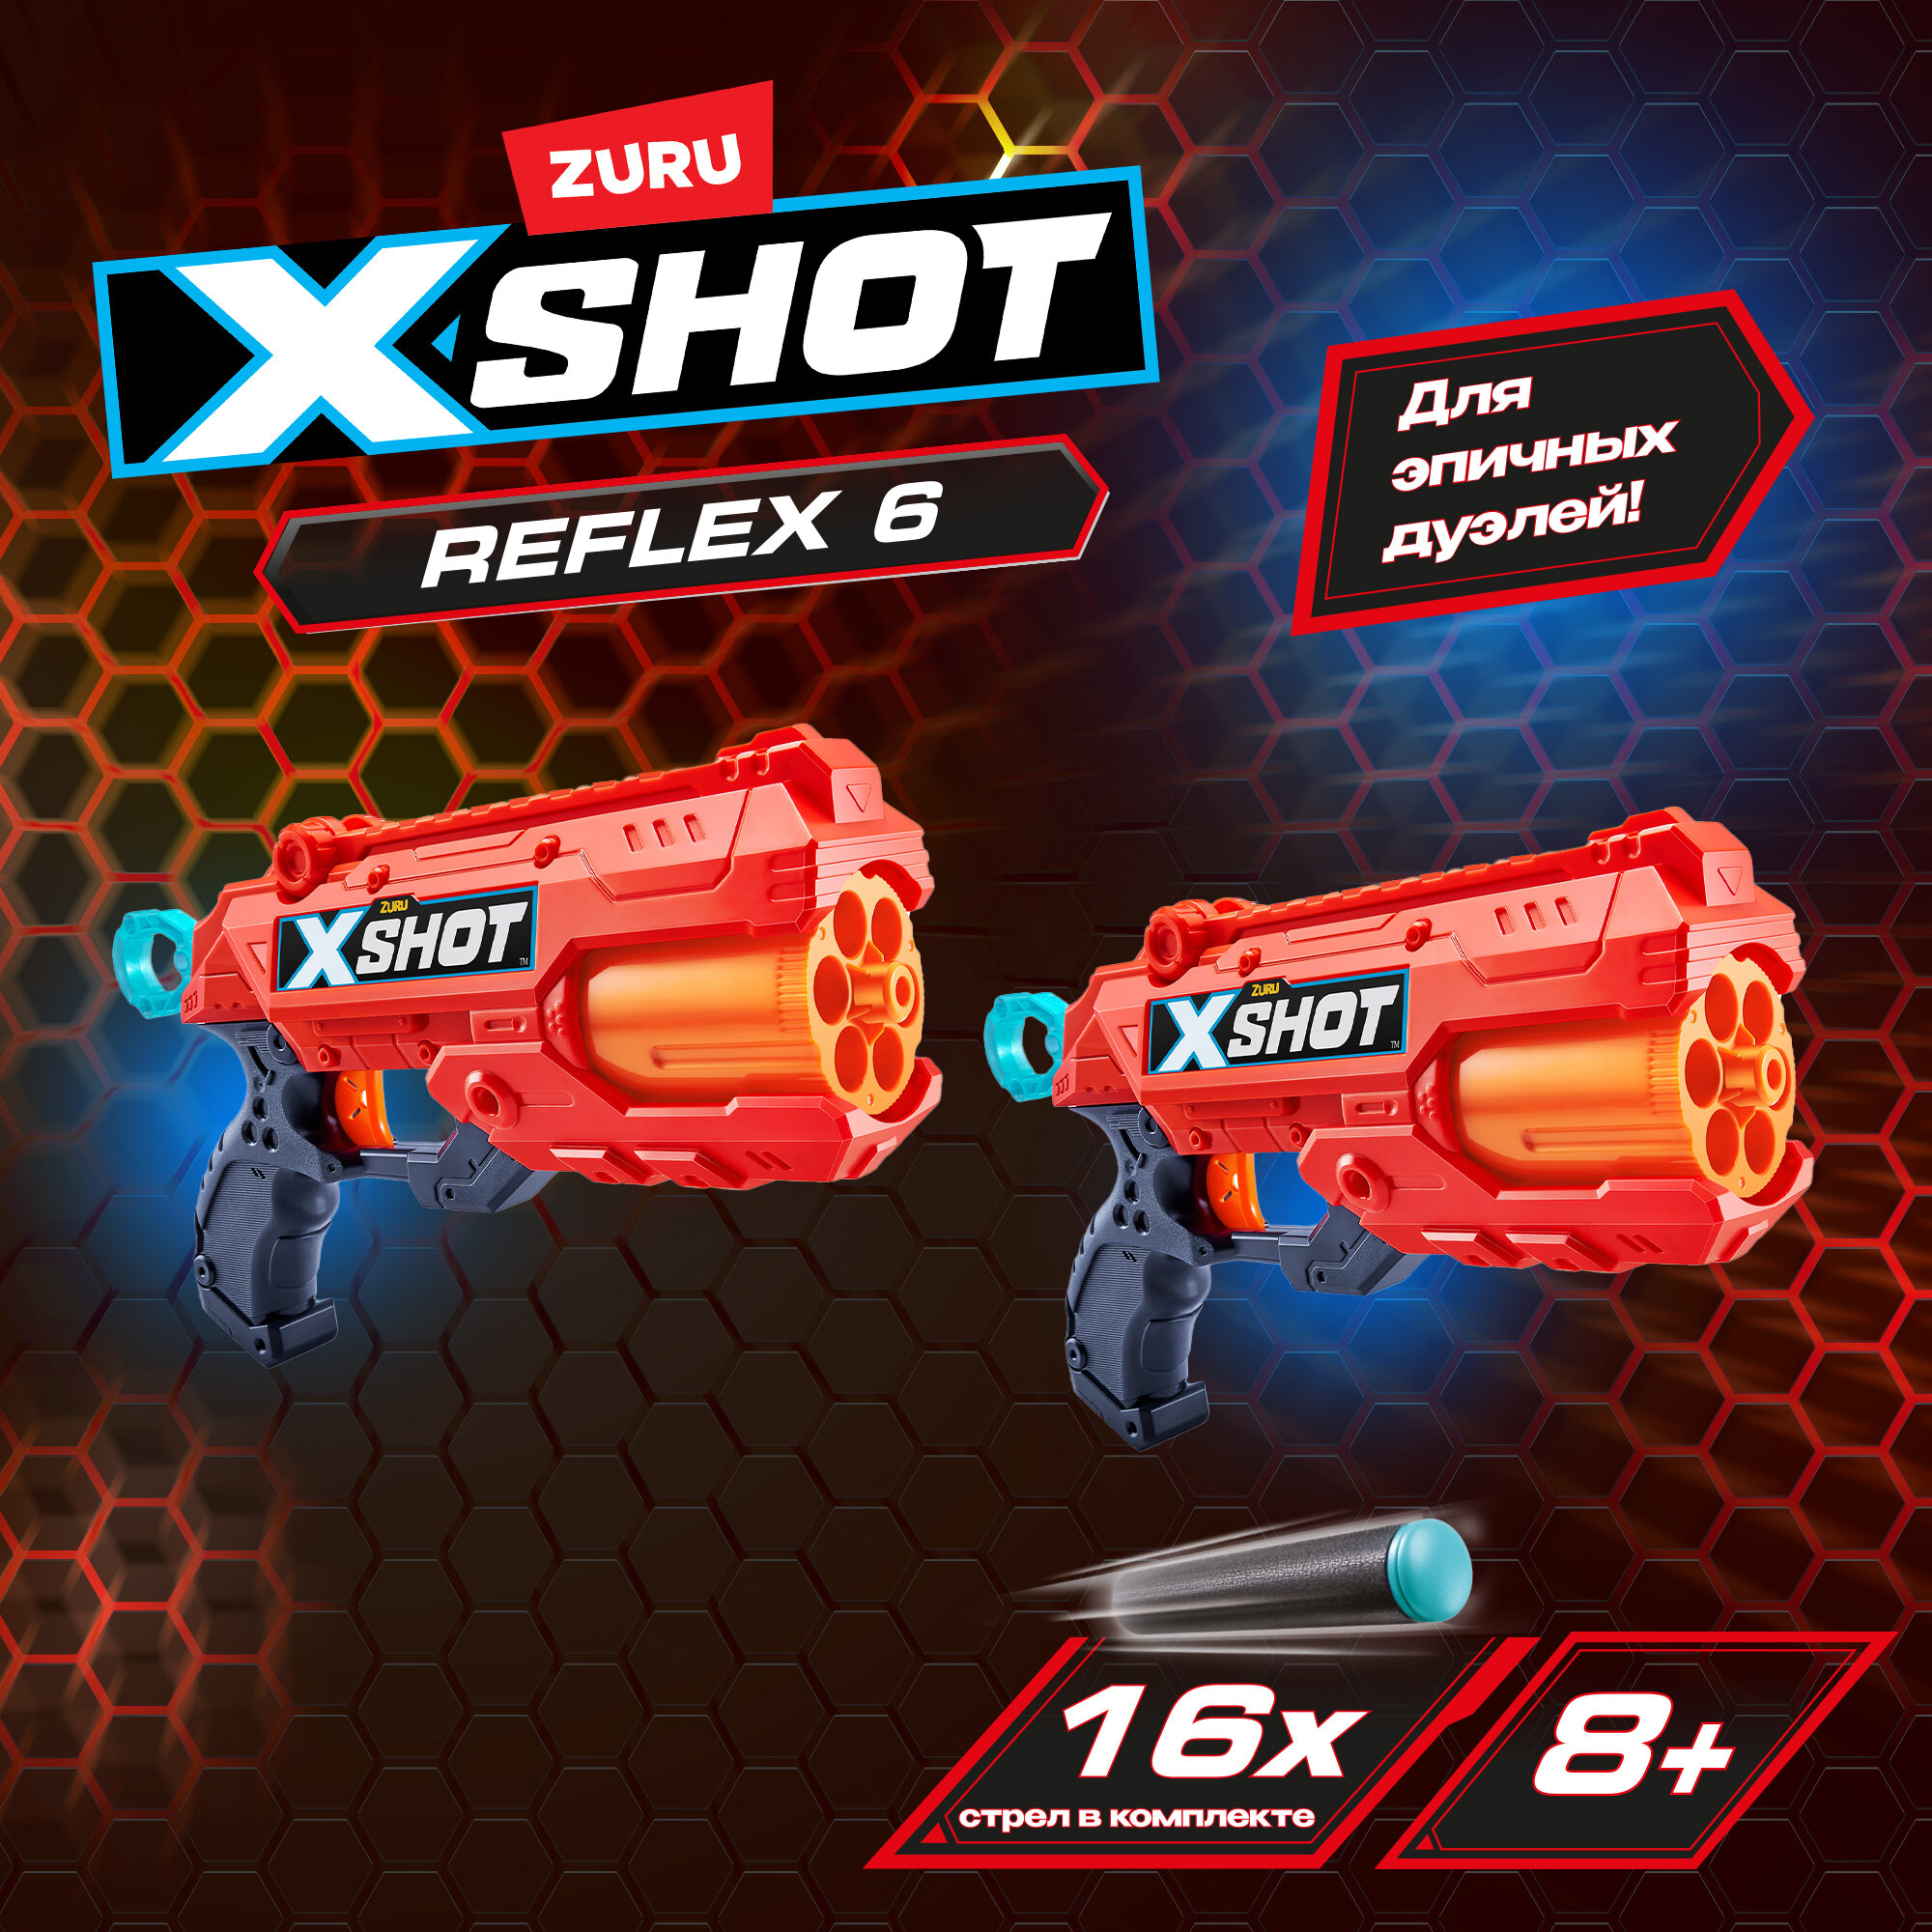 Набор бластеров ZURU X-SHOT Excel Double Reflex 6 Рефлекс, 2 шт., с мишенями, игрушки для мальчиков, 36434